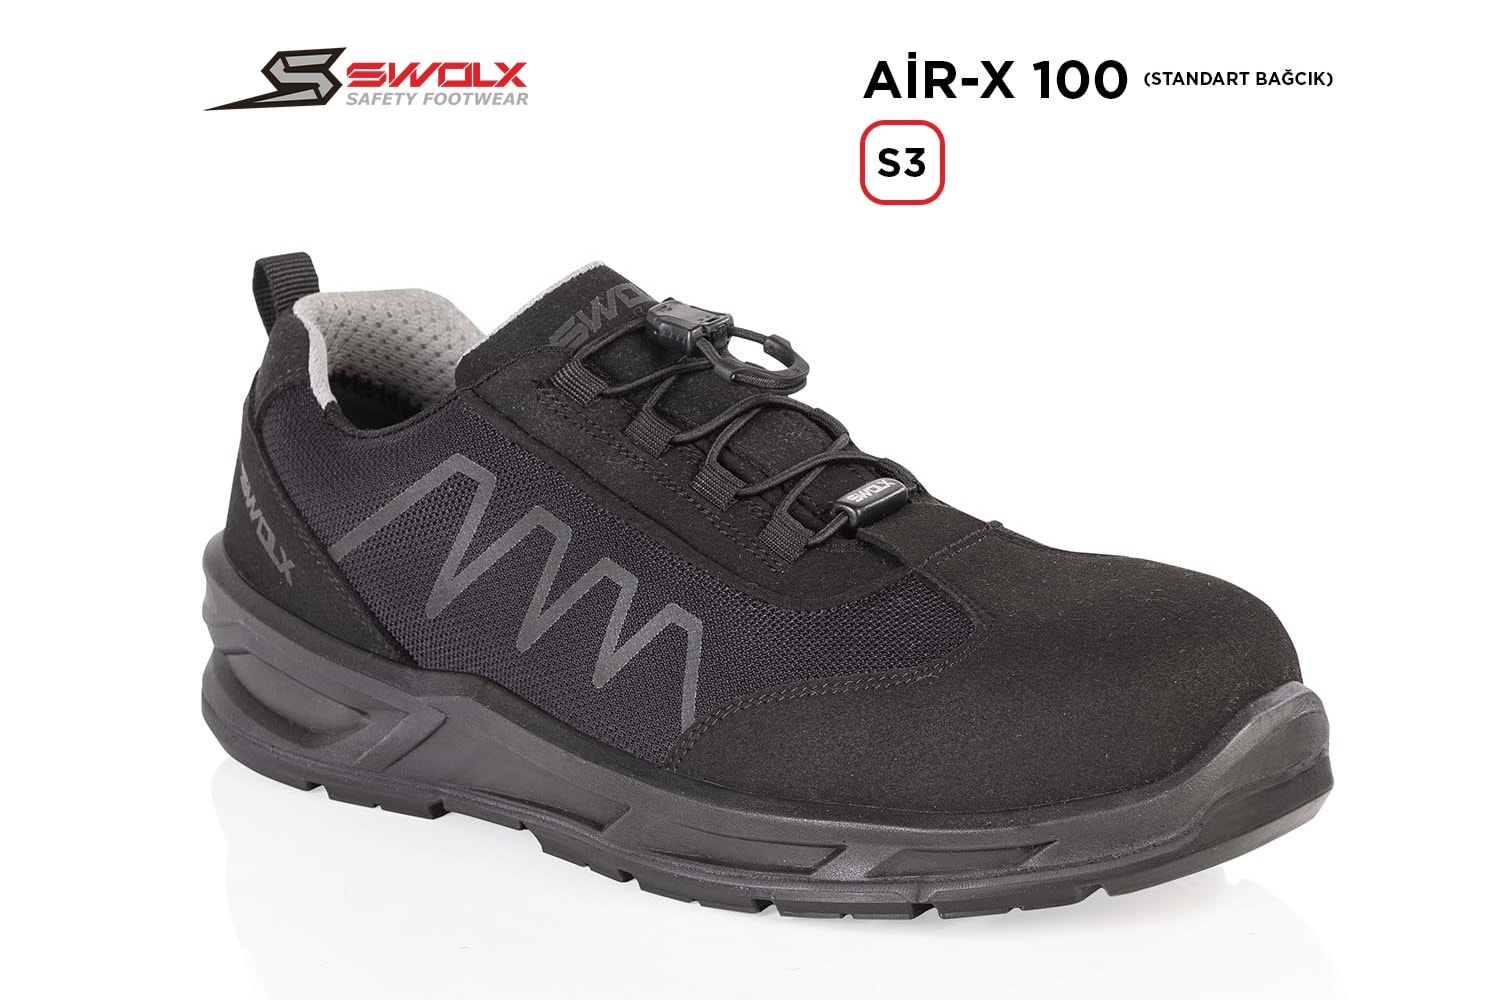 Swolx İş Ayakkabısı - Air-X Standart Bağcık 100 S3 - 46